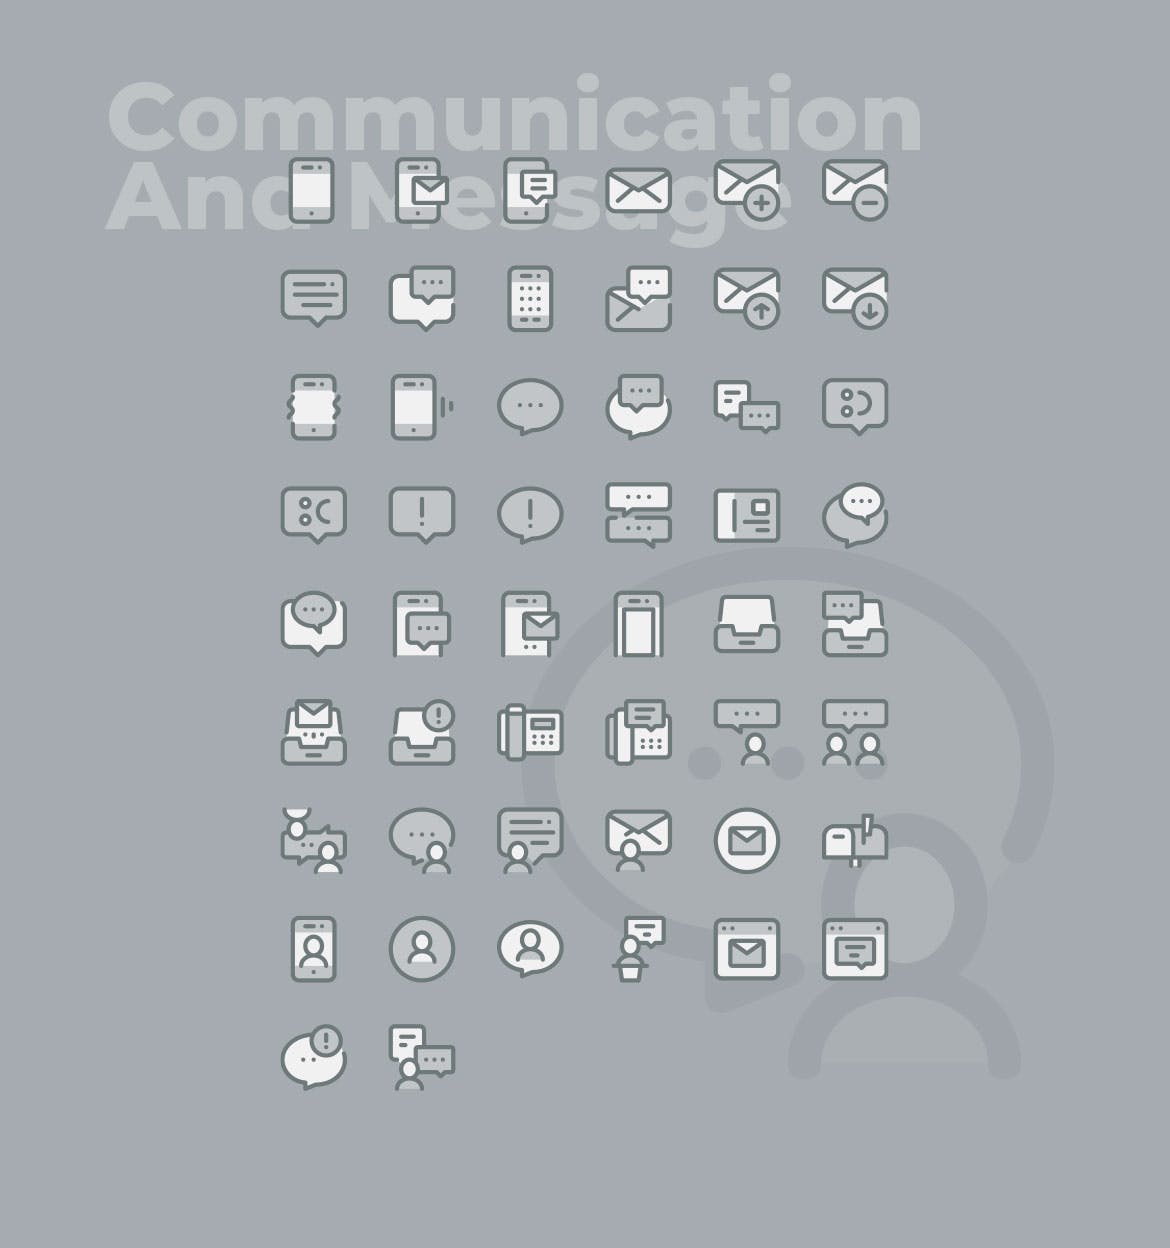 50枚社交通讯主题双色调矢量16设计素材网精选图标 50 Communication Icons  –  Two Tone Style插图(1)